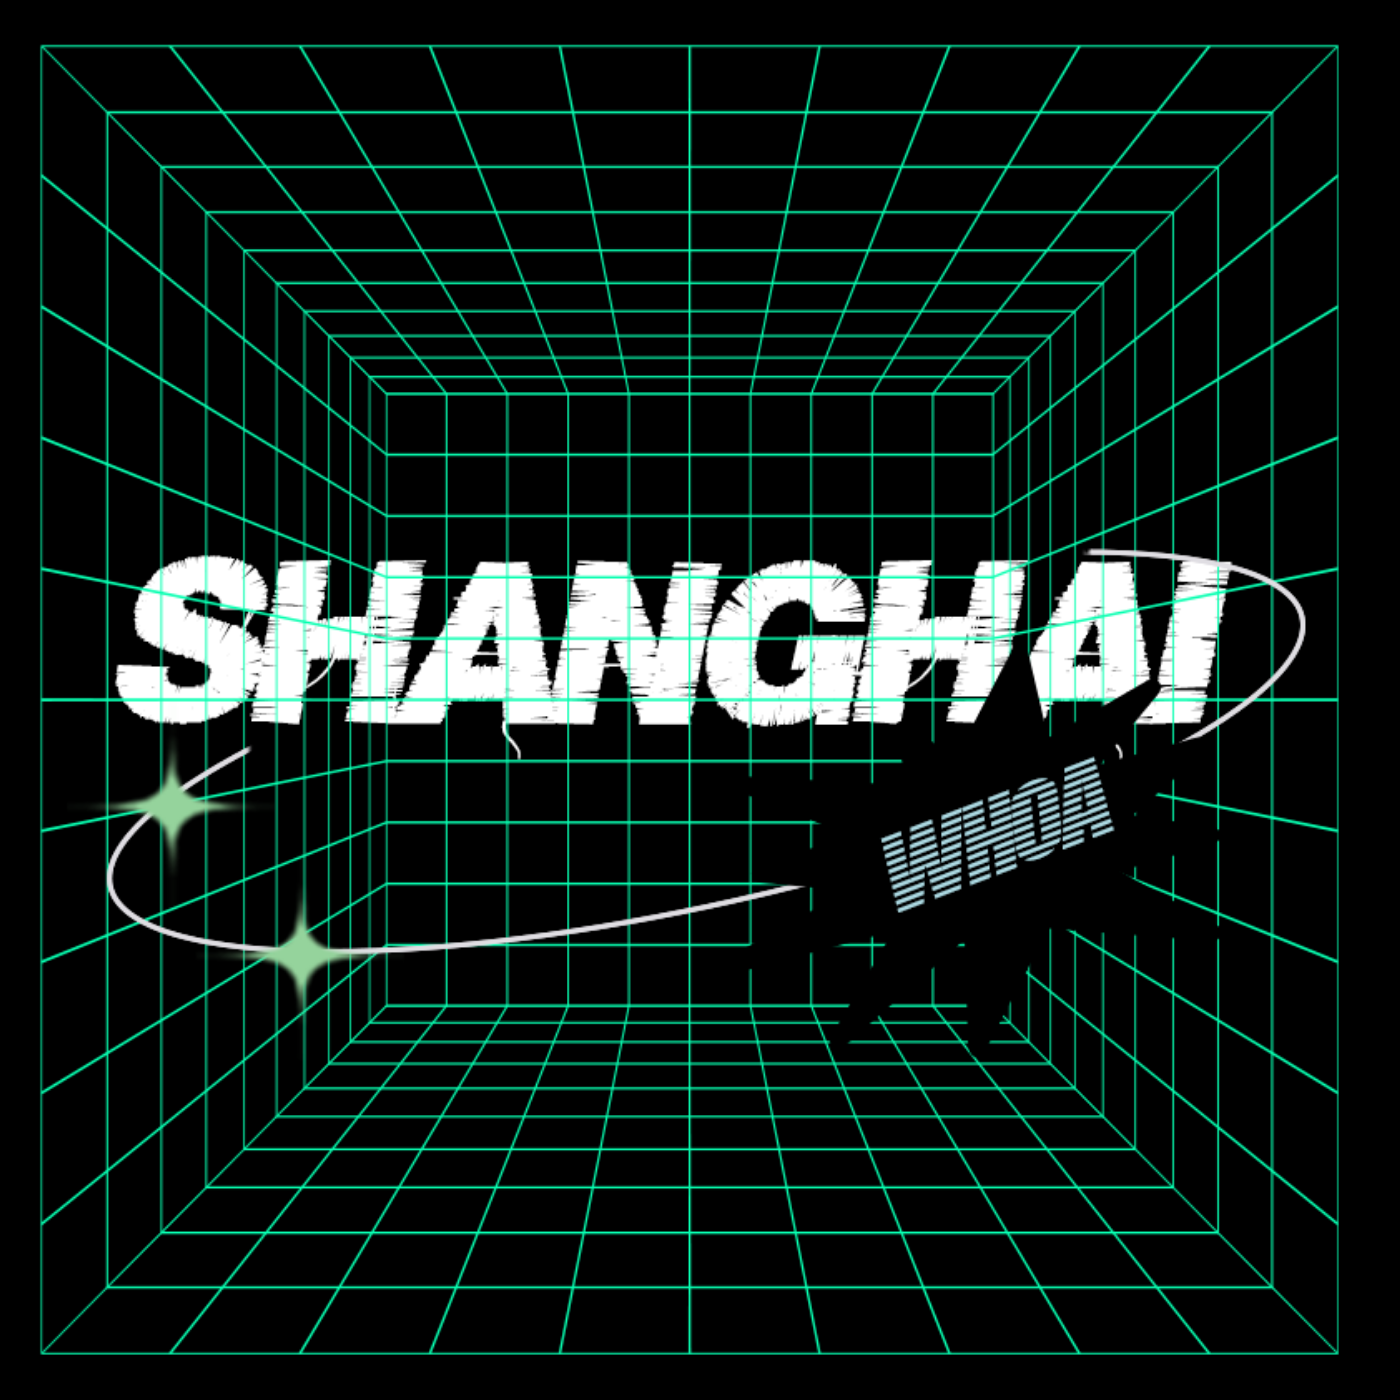 Whao Shanghai